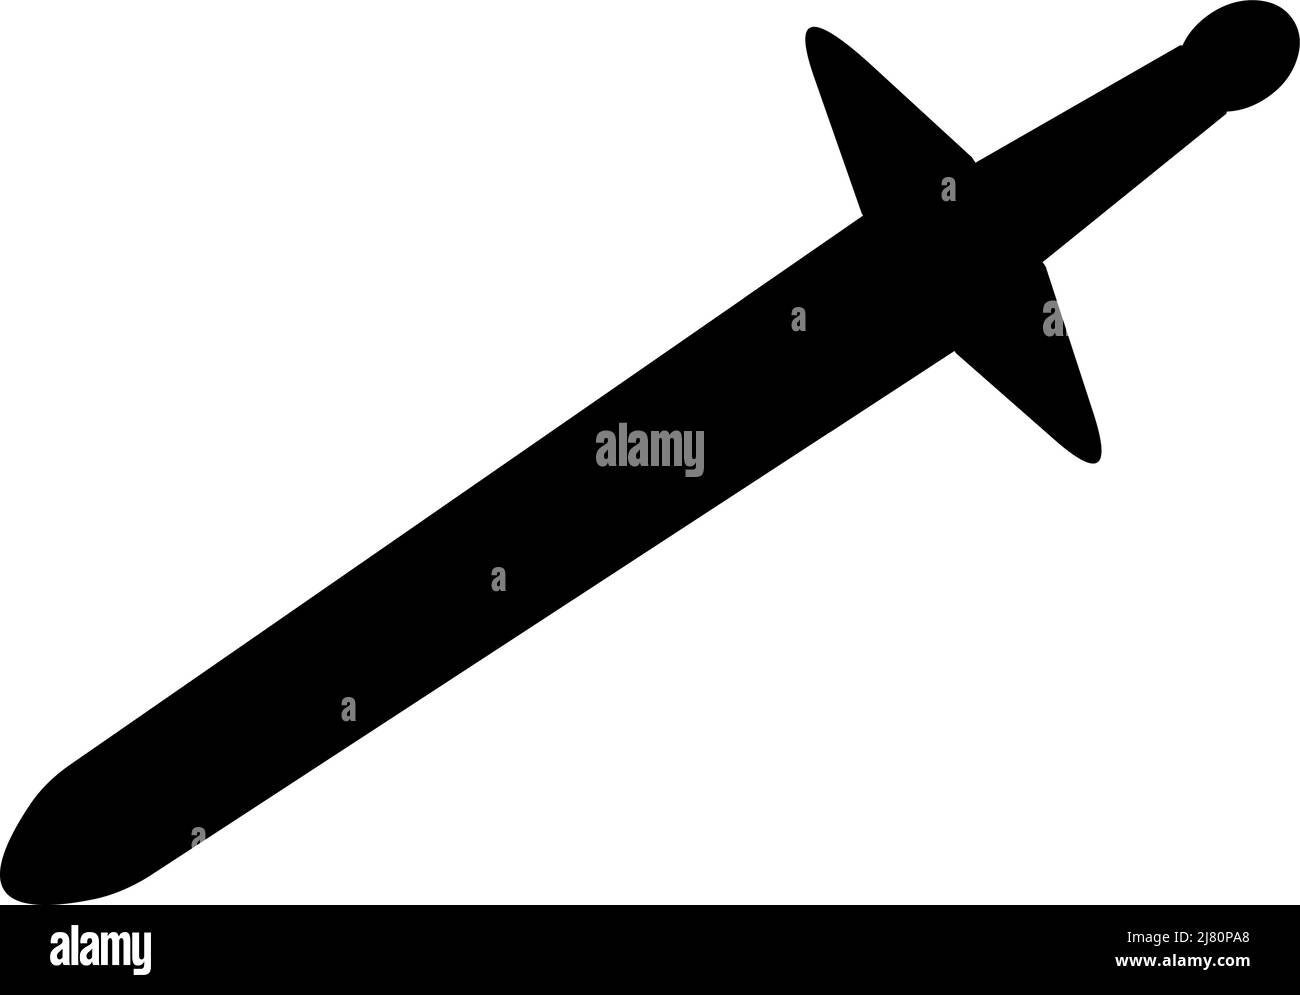 Vektor-Illustration der schwarzen Silhouette eines Schwertes Stock Vektor